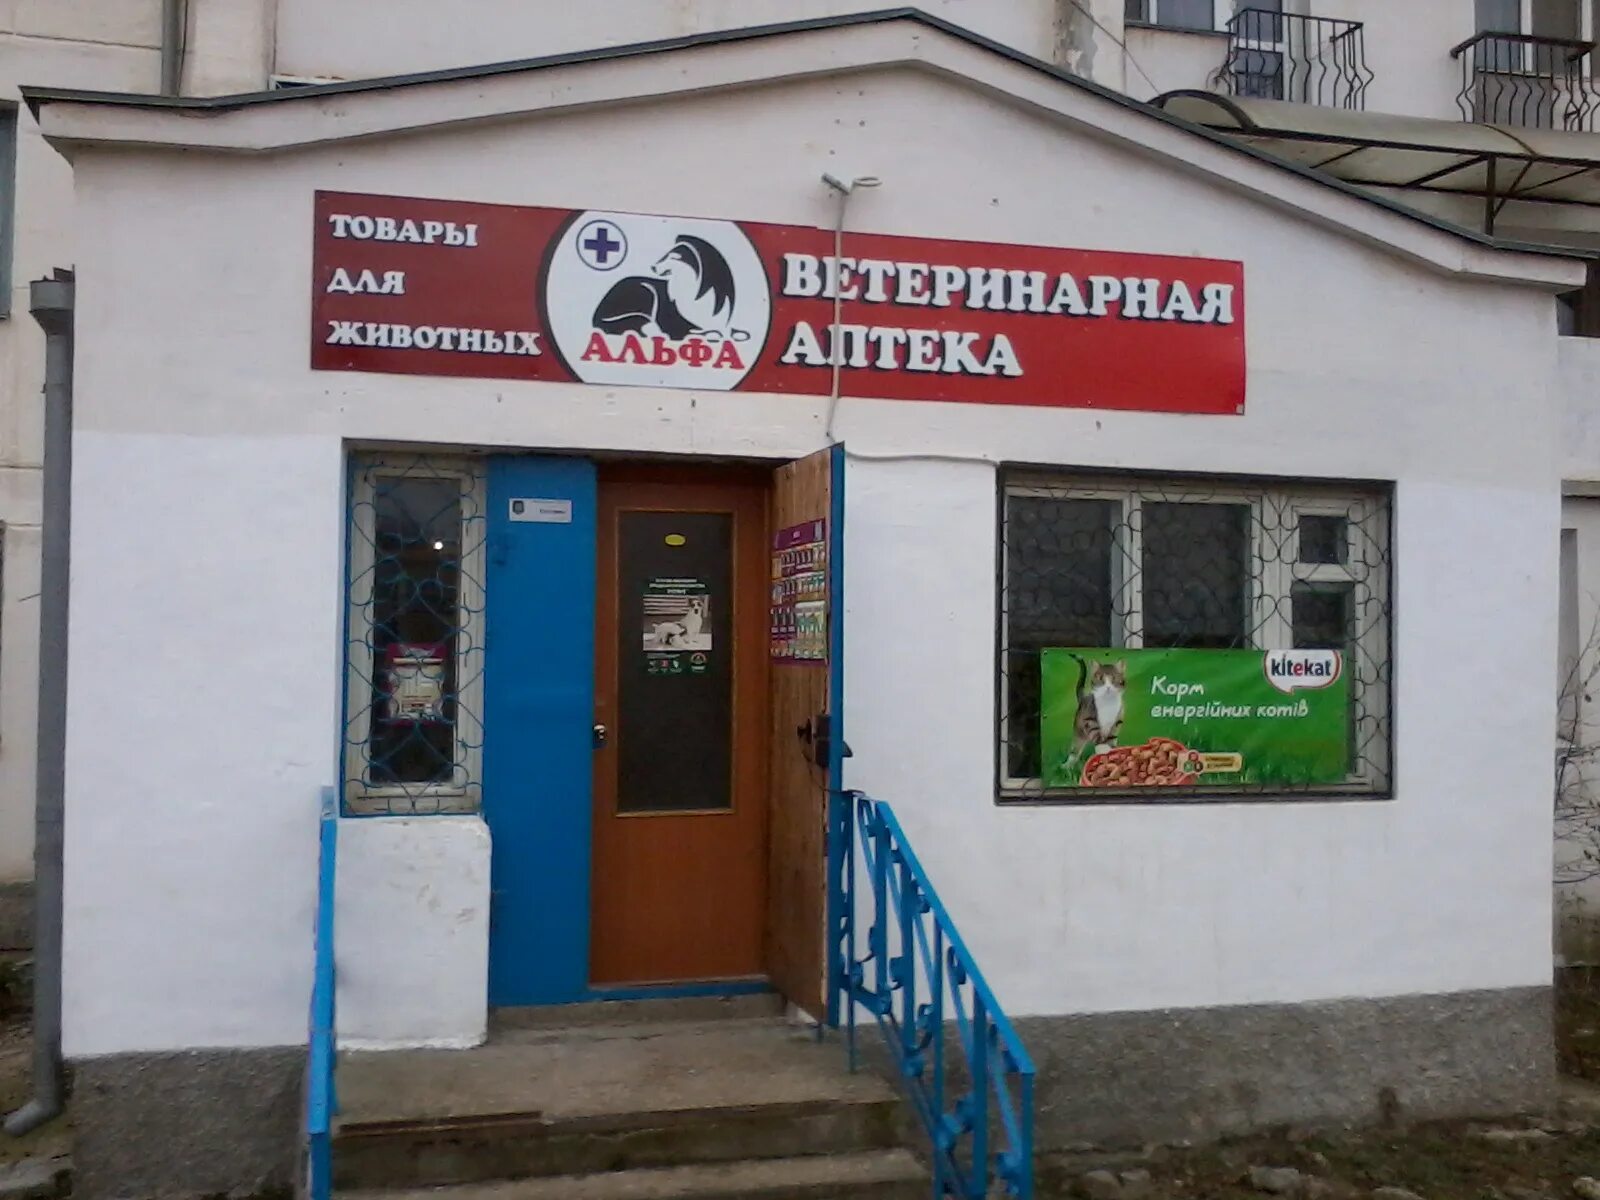 Черемушки ветеринарная. Ветеринарная аптека Шебекино. Альфа ветеринарная клиника Севастополь. Аптека и ветеринарная аптека. Ветеринарная аптека Кызыл.